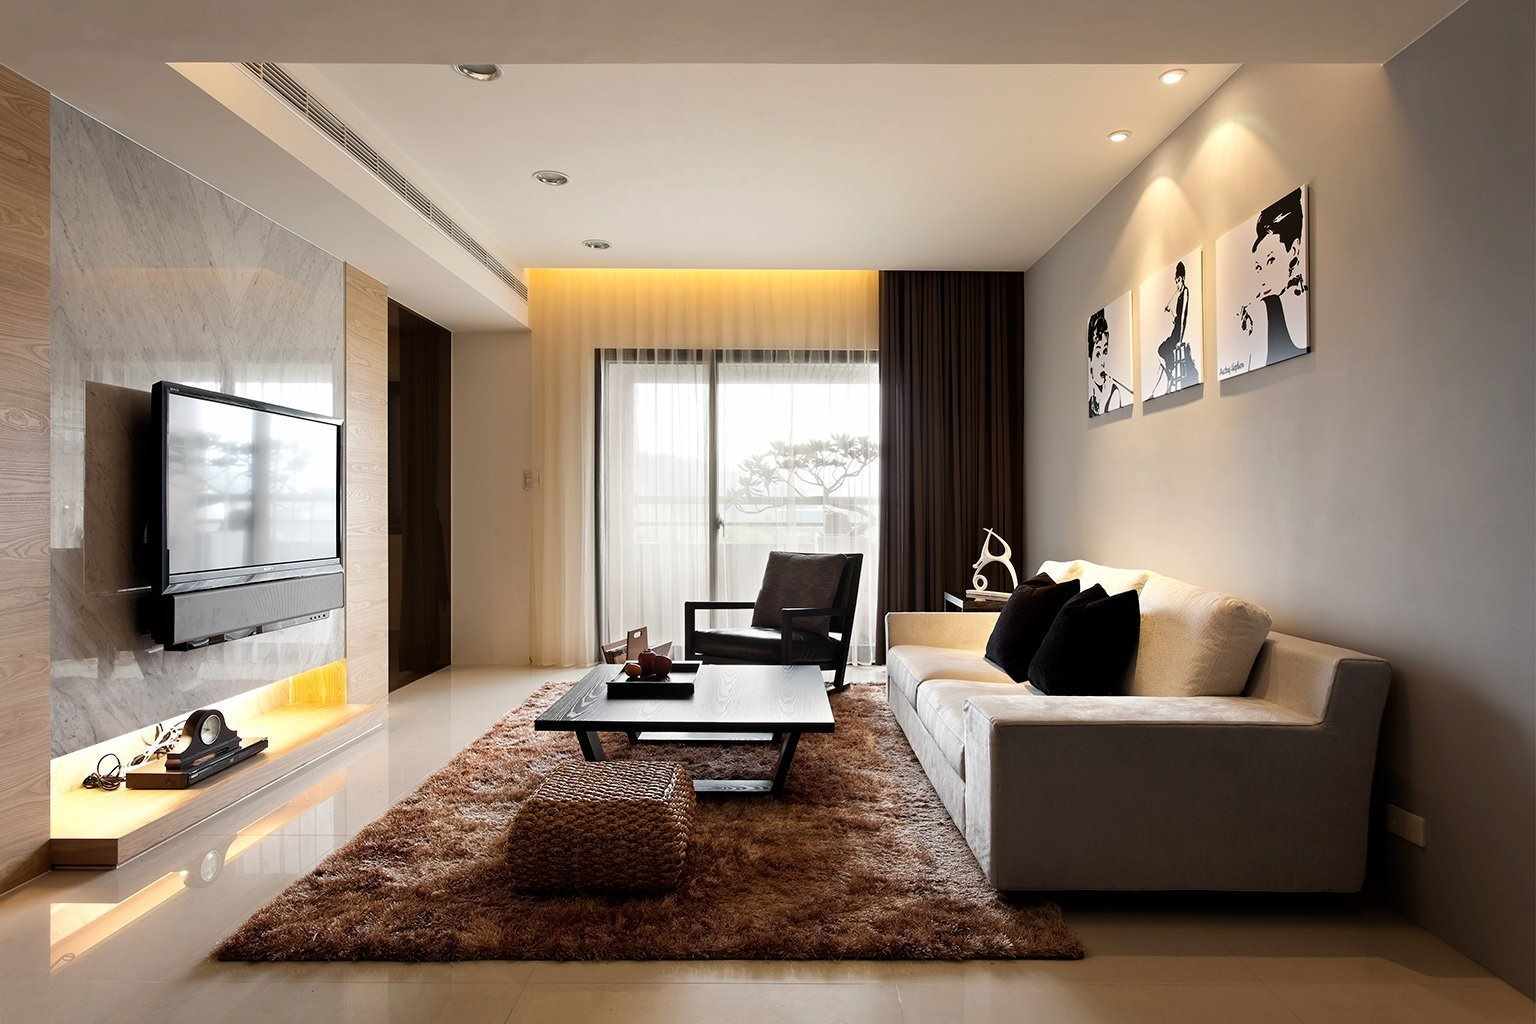 un exemple d’aplicació d’un disseny inusual d’una sala d’estil a l’estil del minimalisme